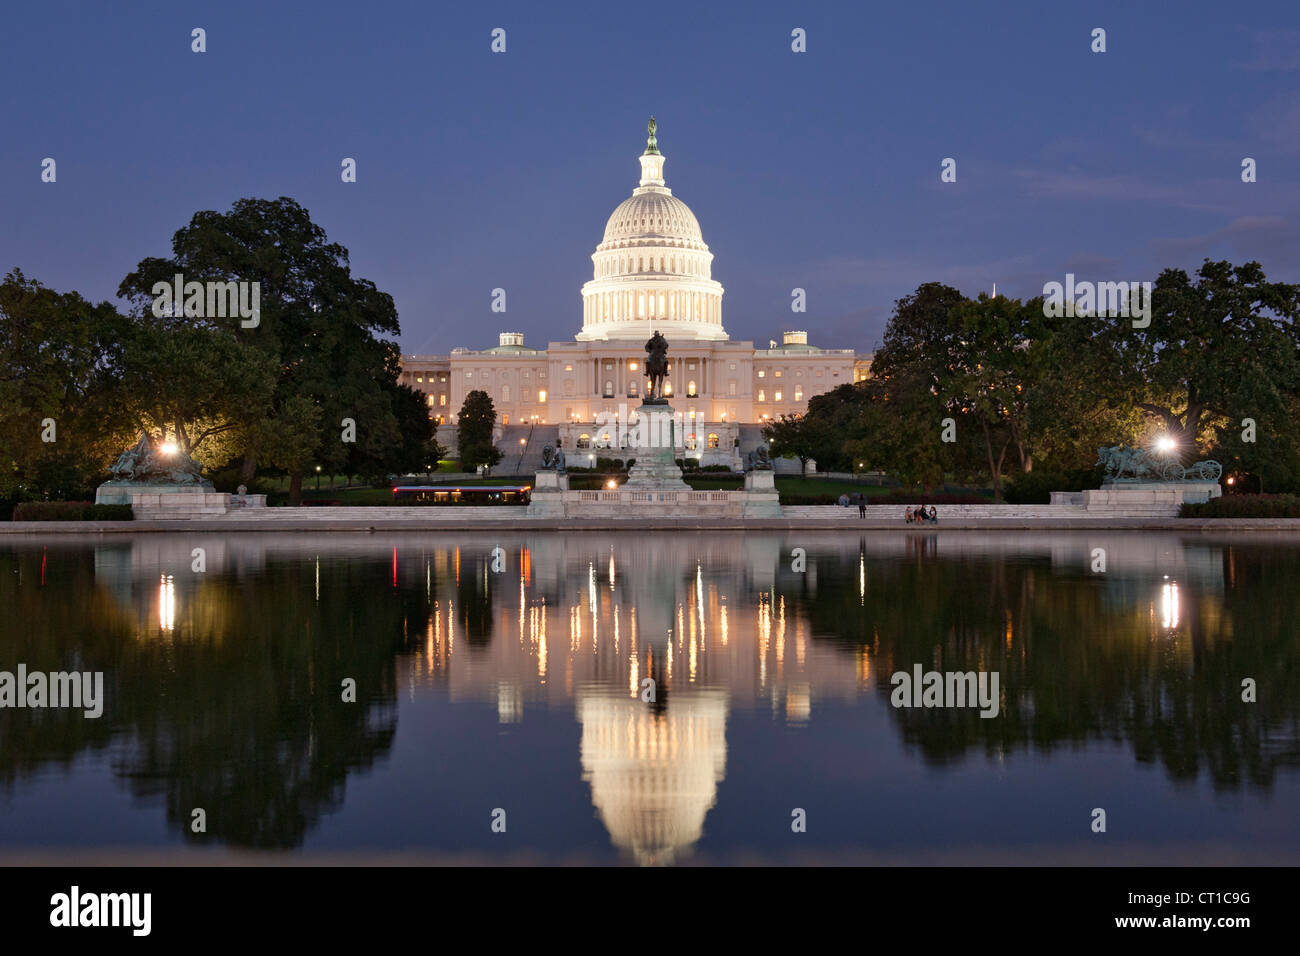 Edificio del Capitolio se refleja en la piscina reflectante en Washington DC, Estados Unidos. Foto de stock